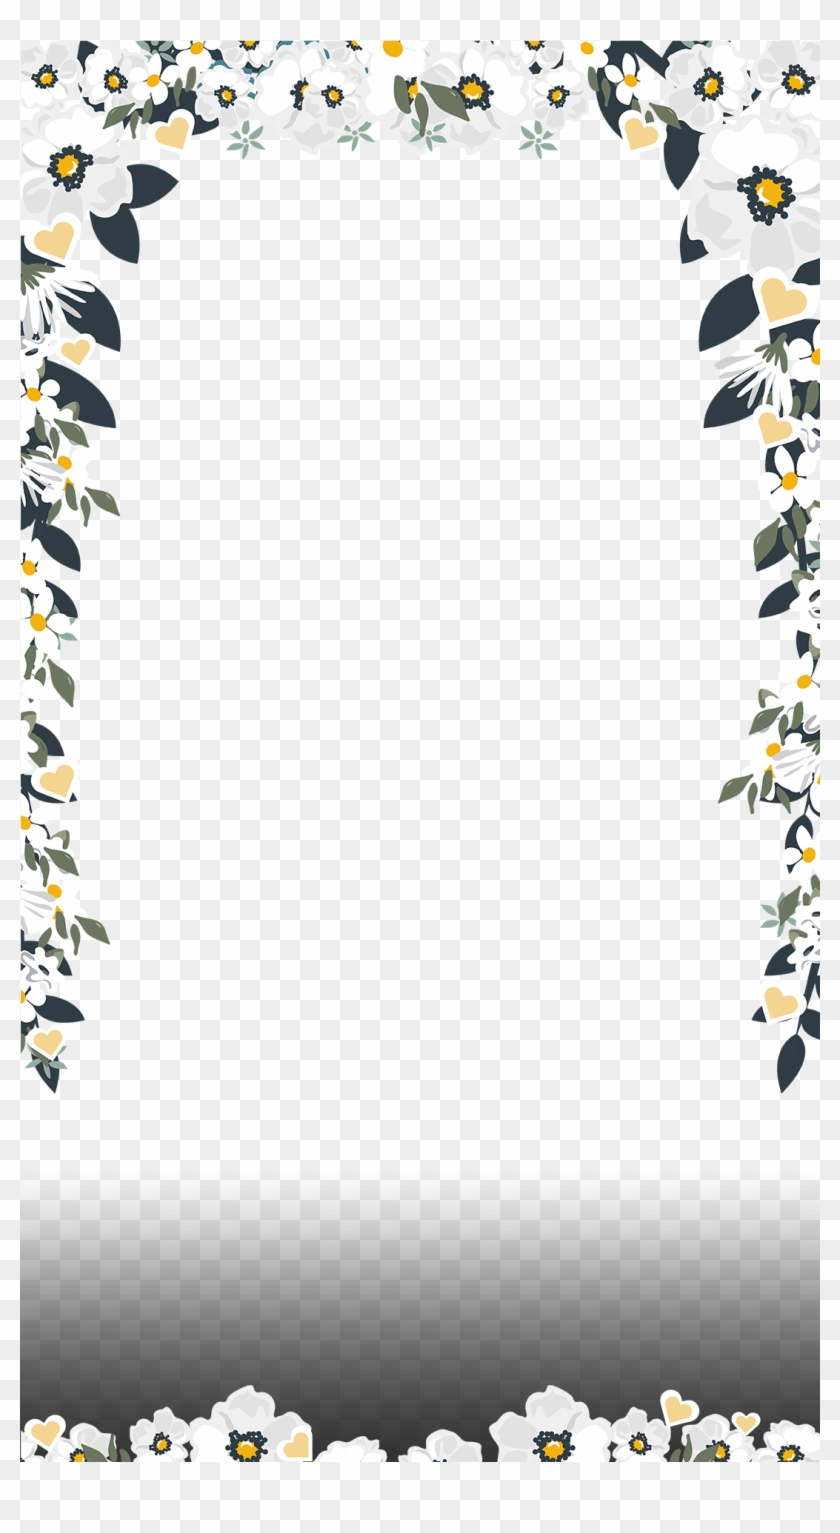 Elegant White Floral Filter Maker On - Wedding Snapchat Filter Png Clipart #296582